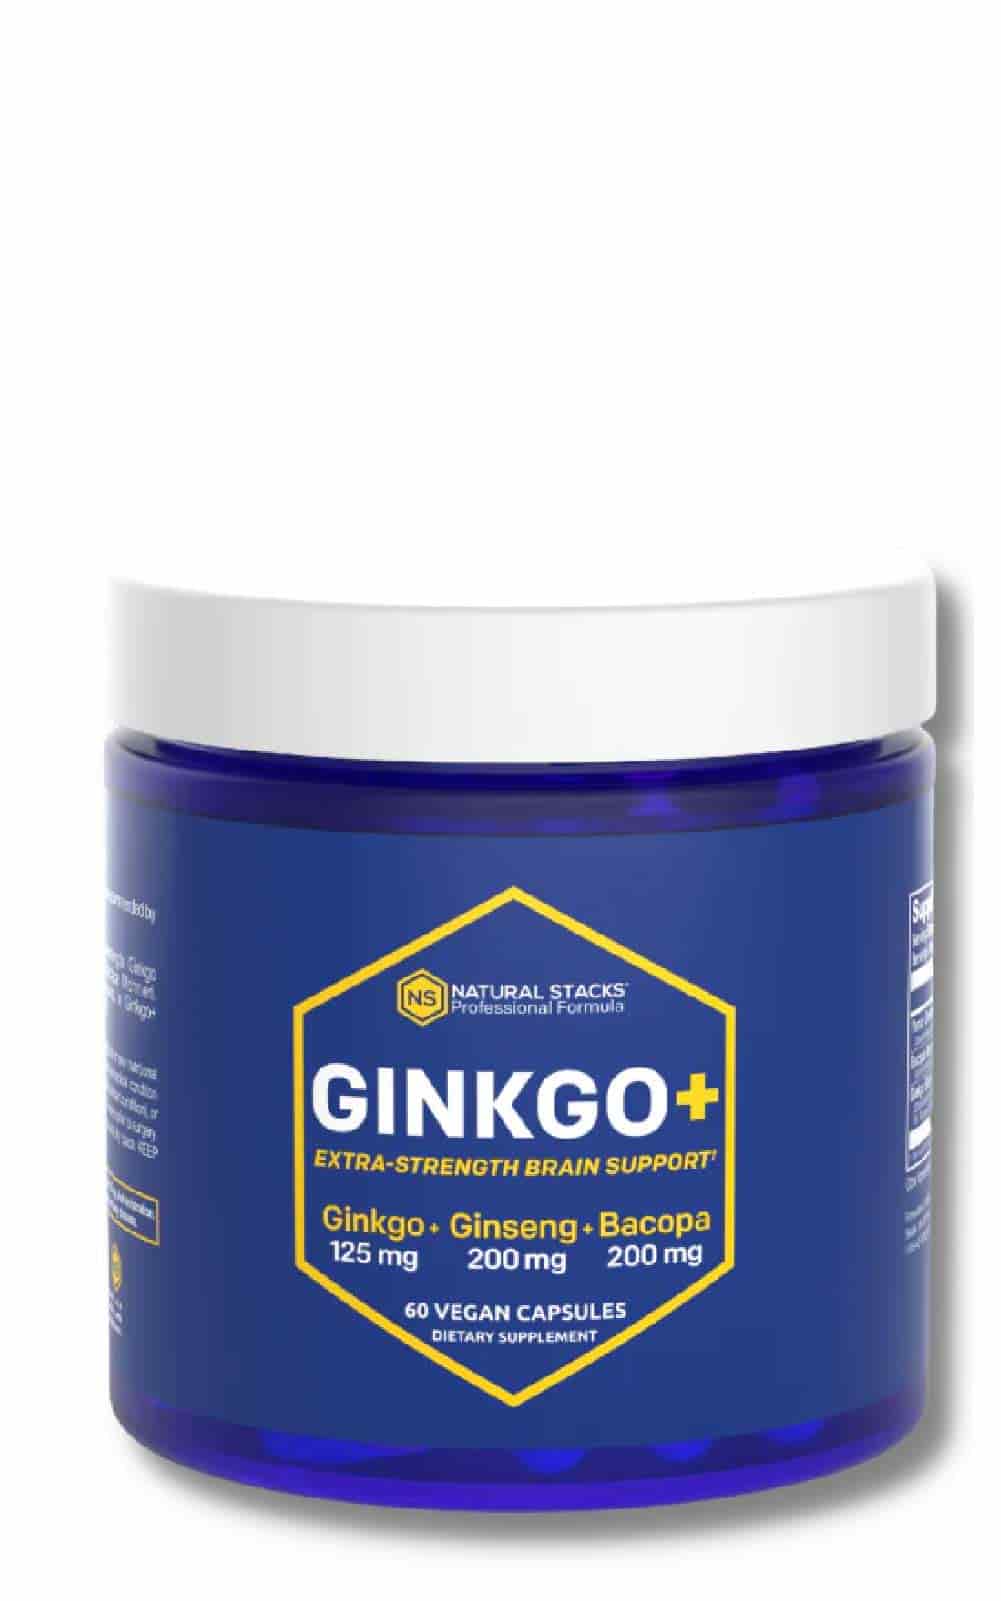 Natural Stacks Ginkgo+ bei LiveHelfi kaufen